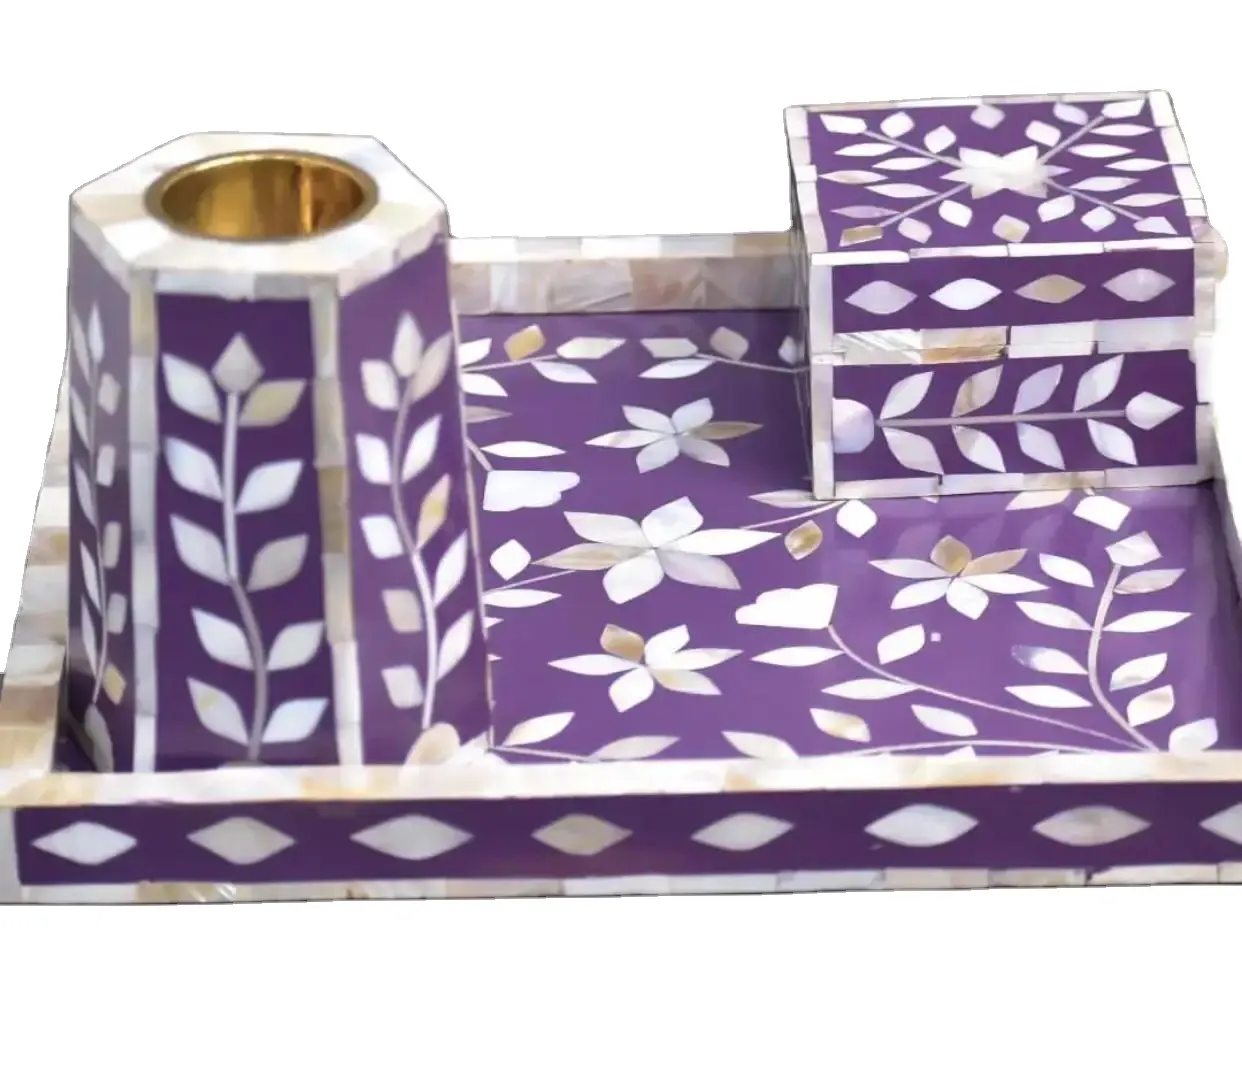 Arapça tasarım lüks el yapımı anne inci bakhoor dukhoon medkhan toptan fiyatlarla hediye ve ev dekor için set